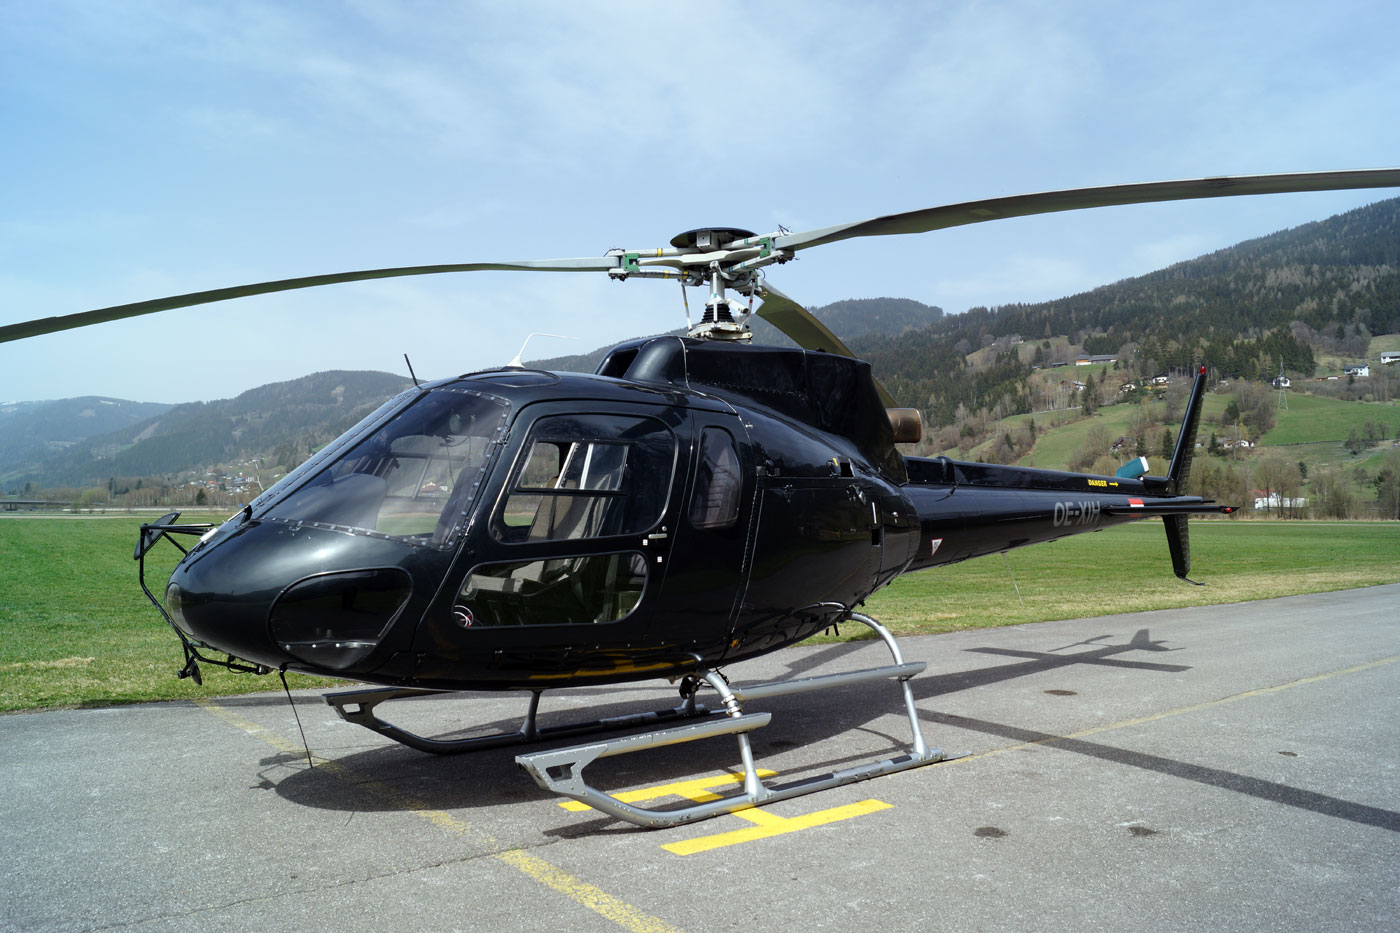 Hubschrauberrundflug für 5 Personen